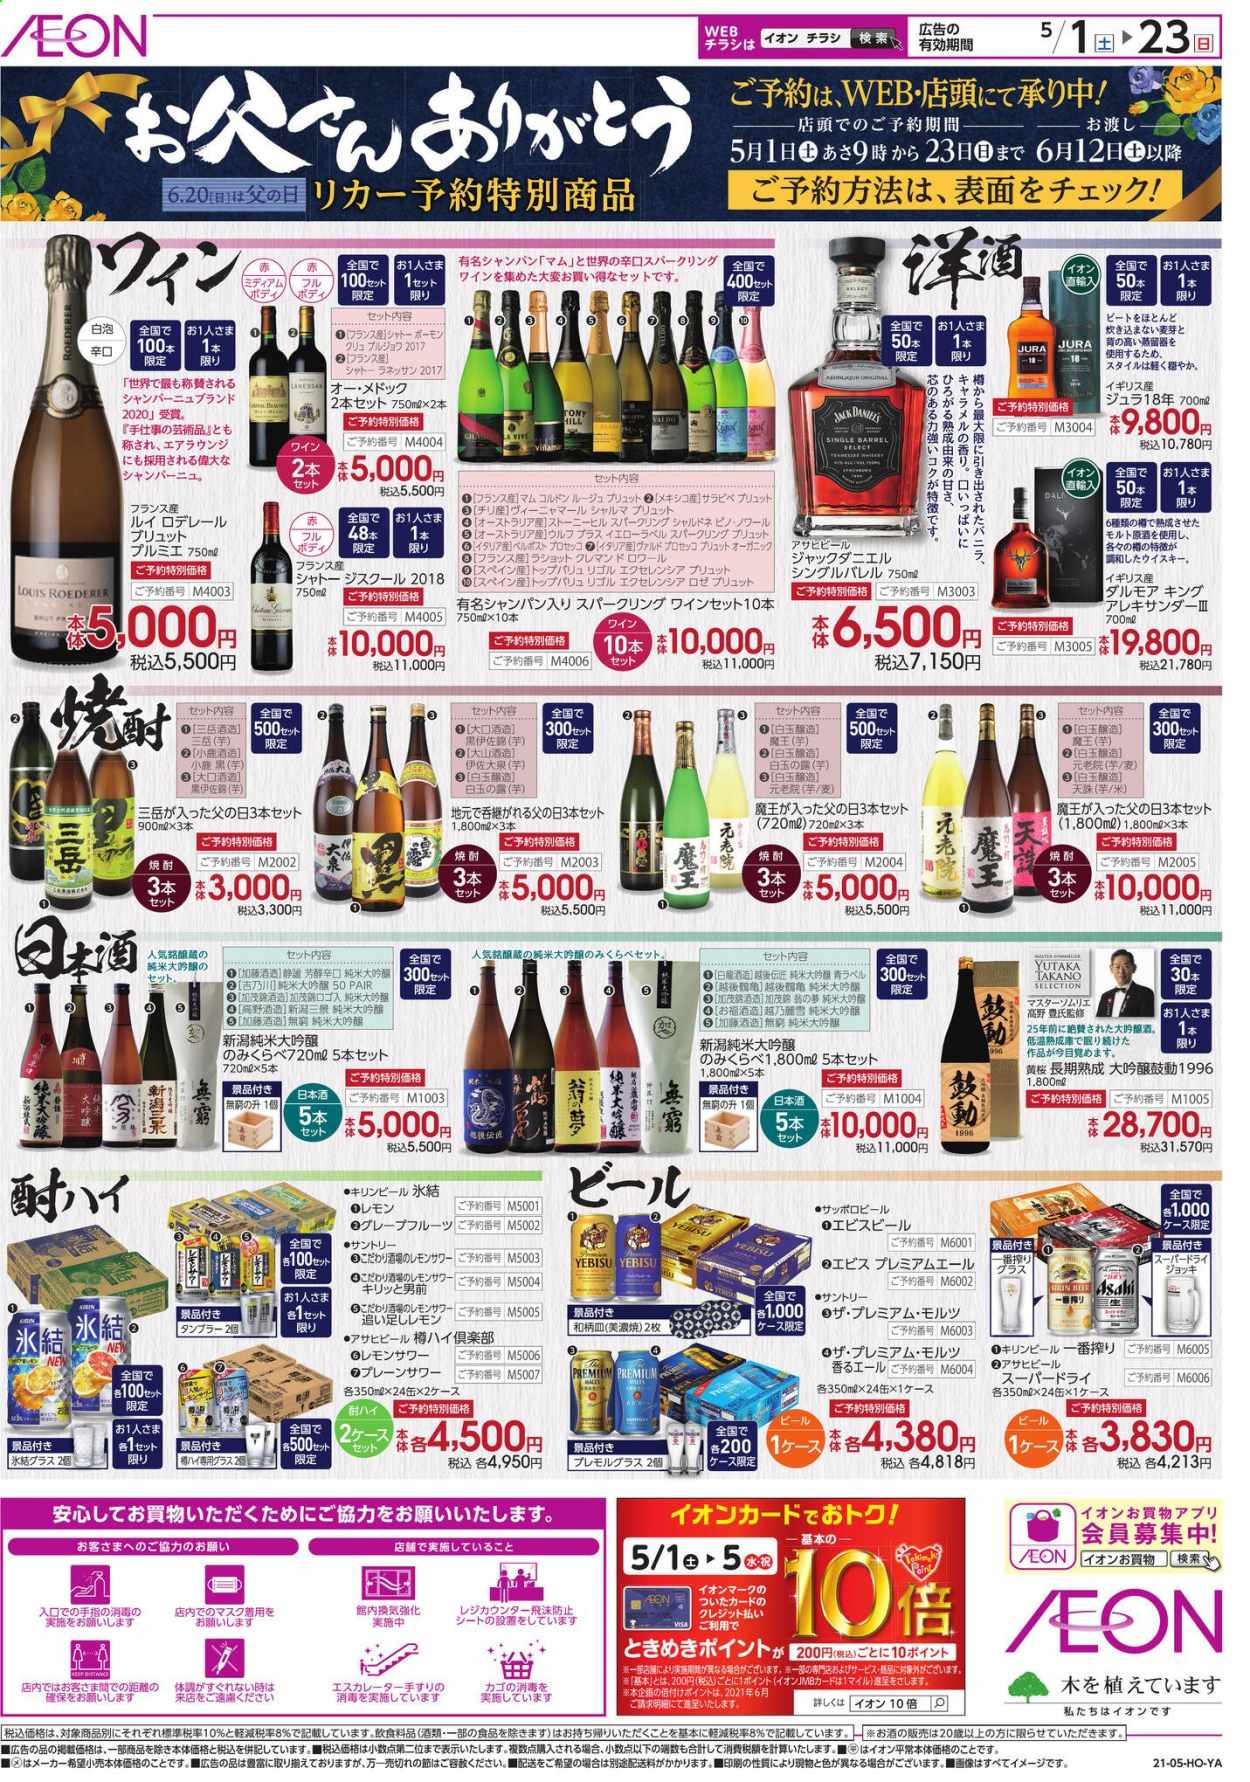 thumbnail - イオンチラシ - 2021年5月1日 - 2021年5月23日 - セール製品 - いちご, お酒, きのこ, ビール, ふき, スーパードライ, 米。ページ2。